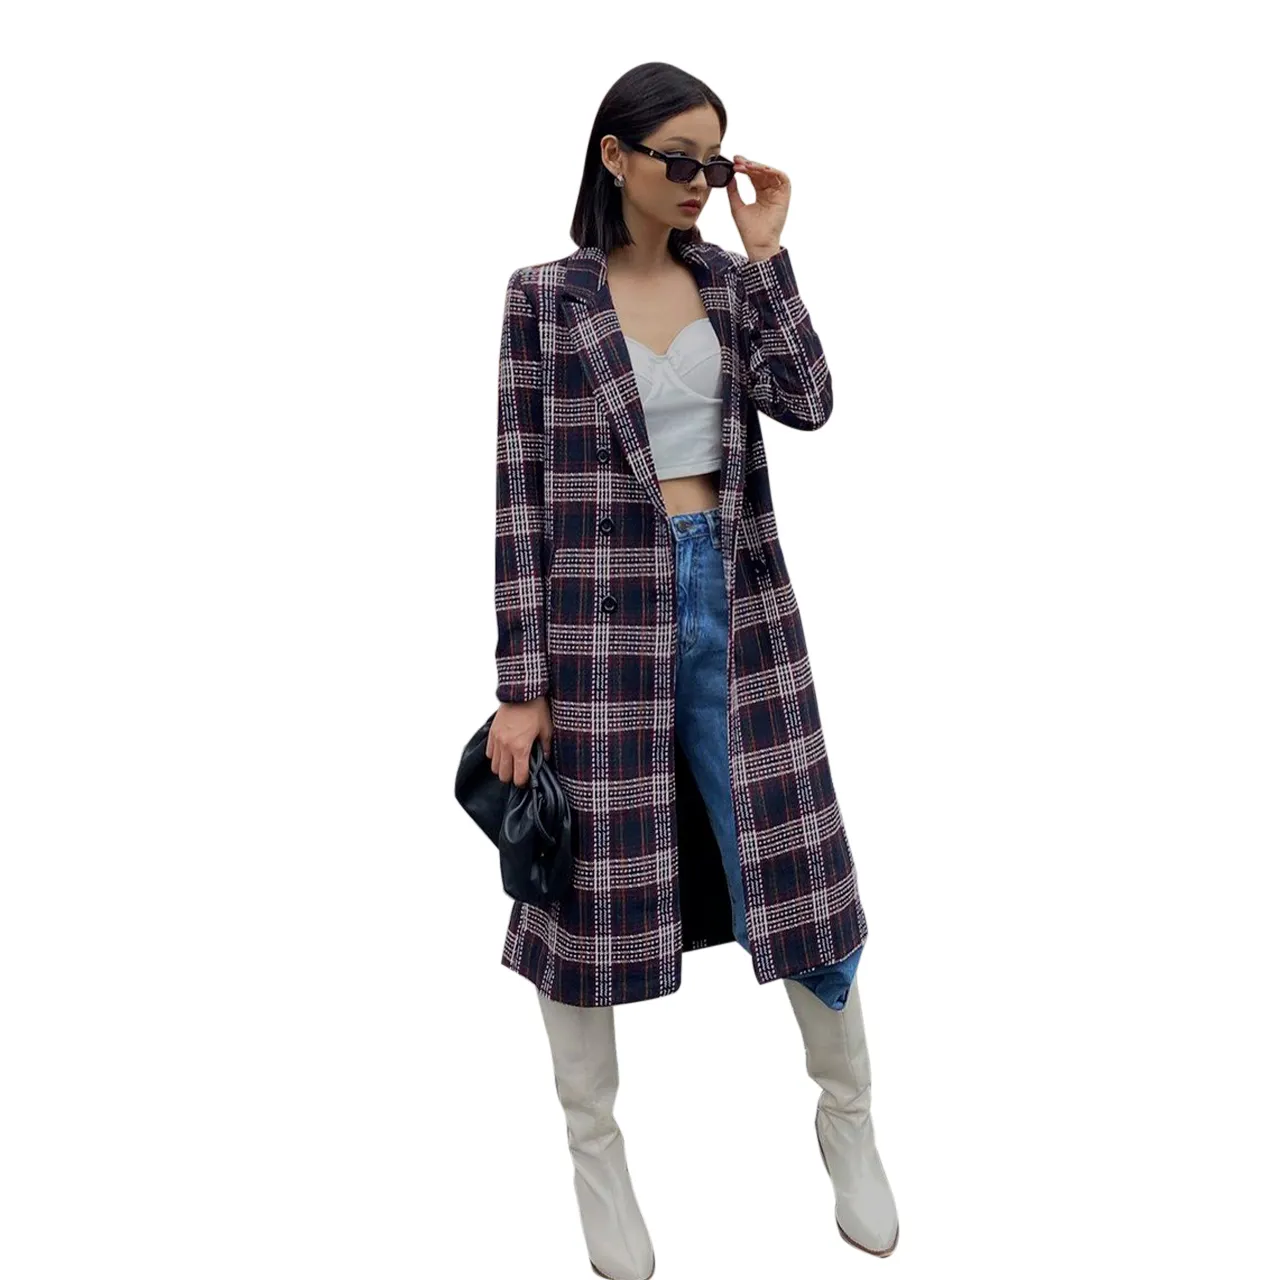 Nova chegada outono e inverno elegante manga comprida xadrez casacos camisa femininos vestido